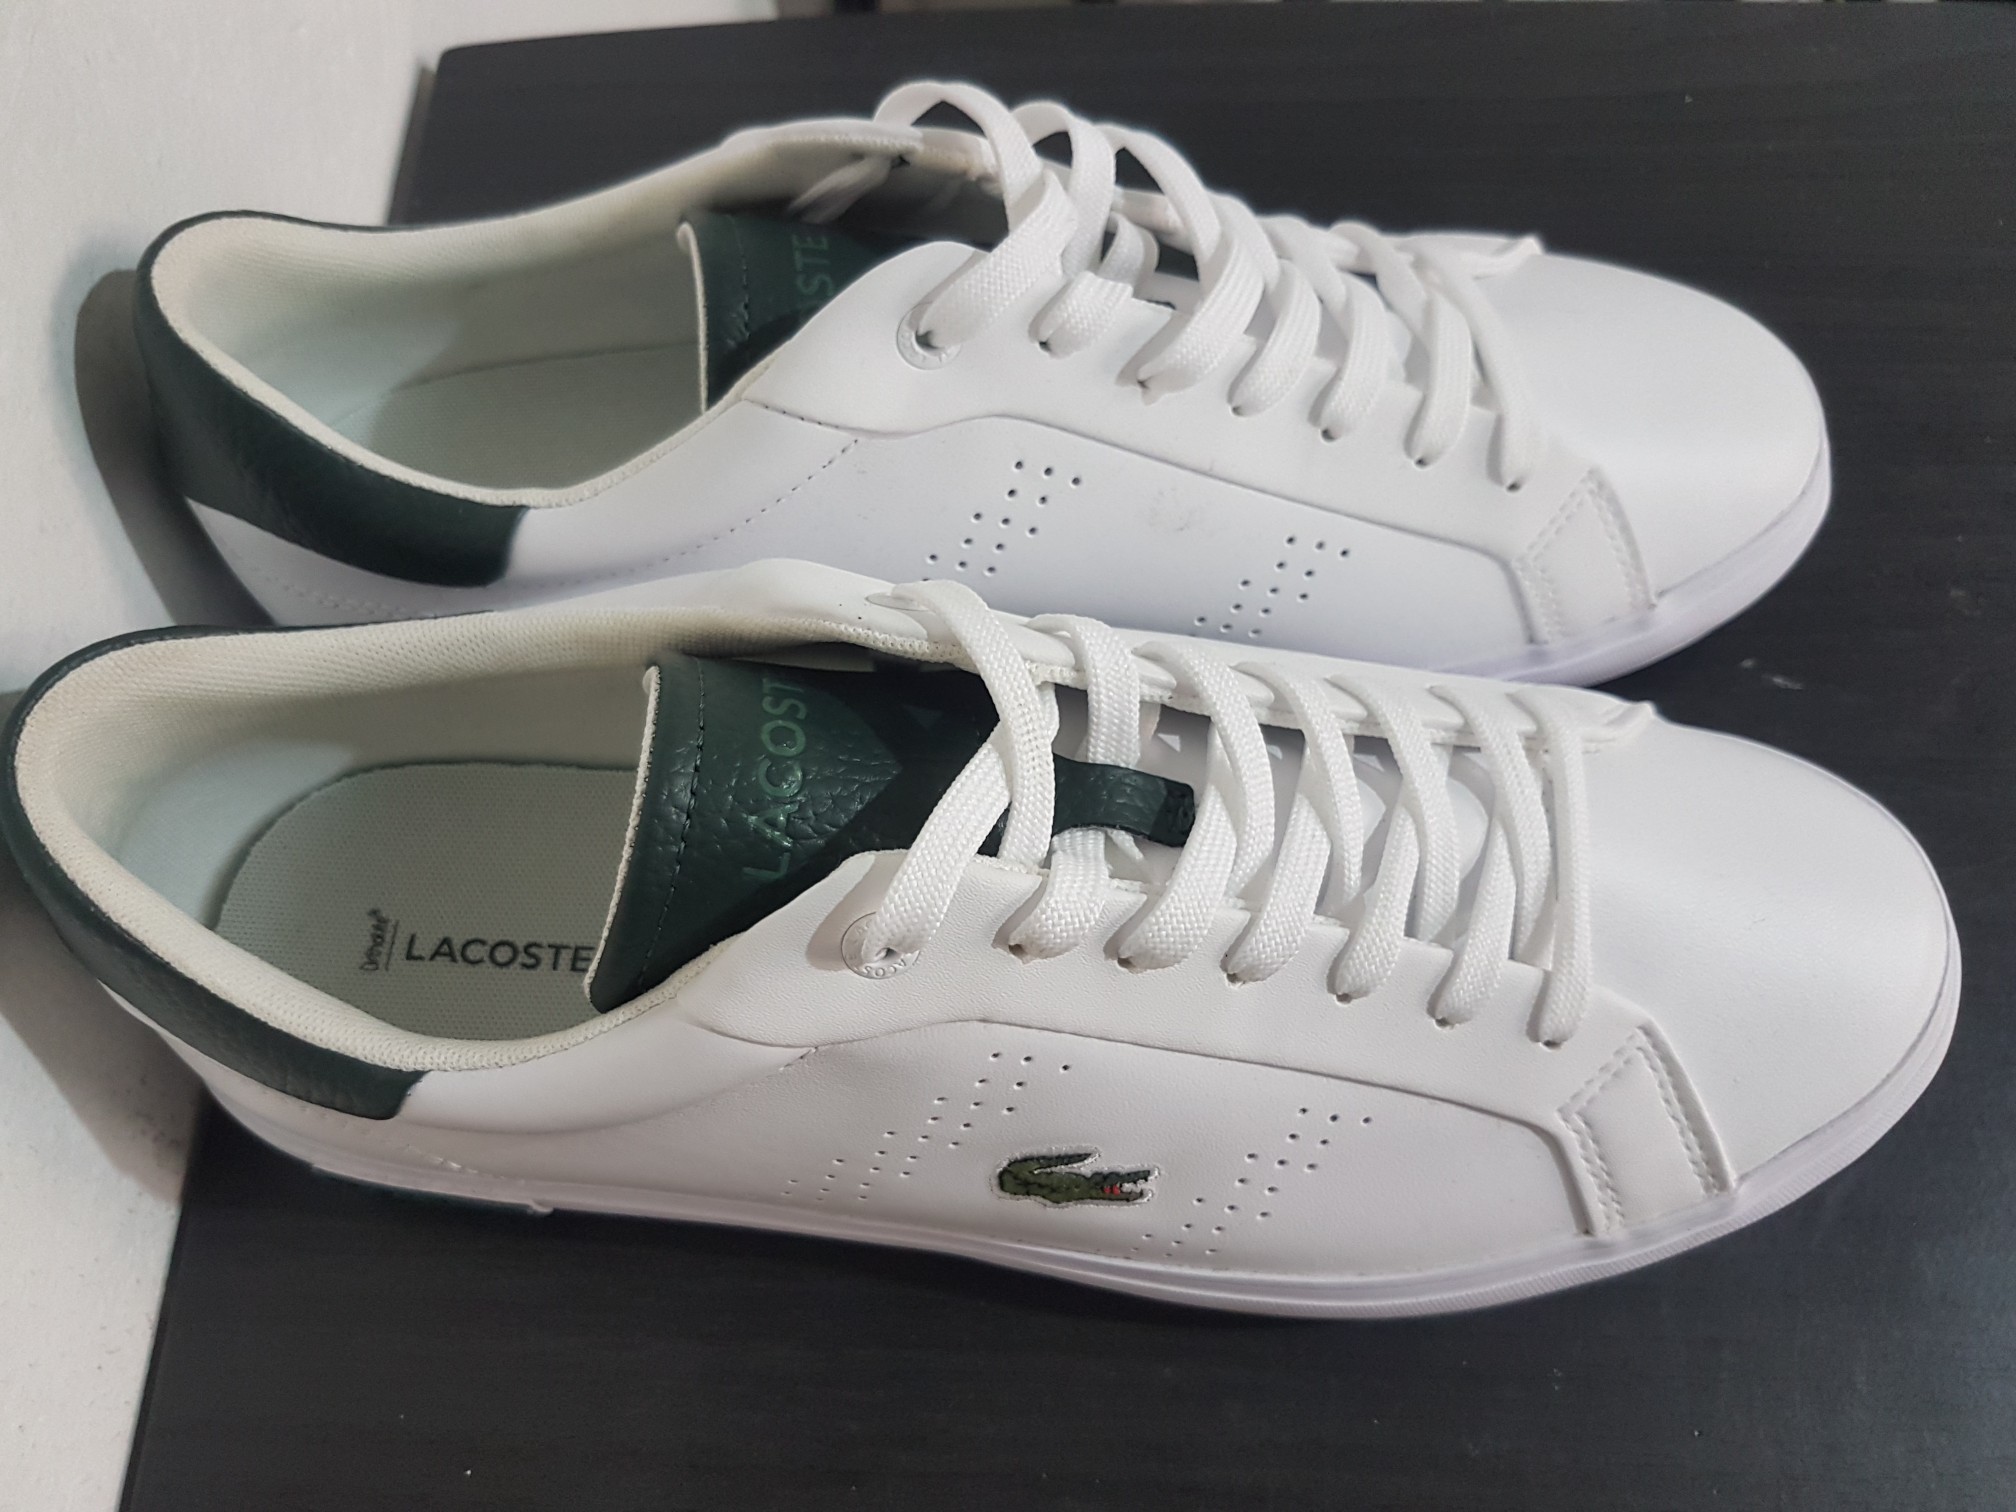 zapatos para hombre - Zapatos, Tenis, Convers, Lacoste, Blanco, verde, hombre. 2